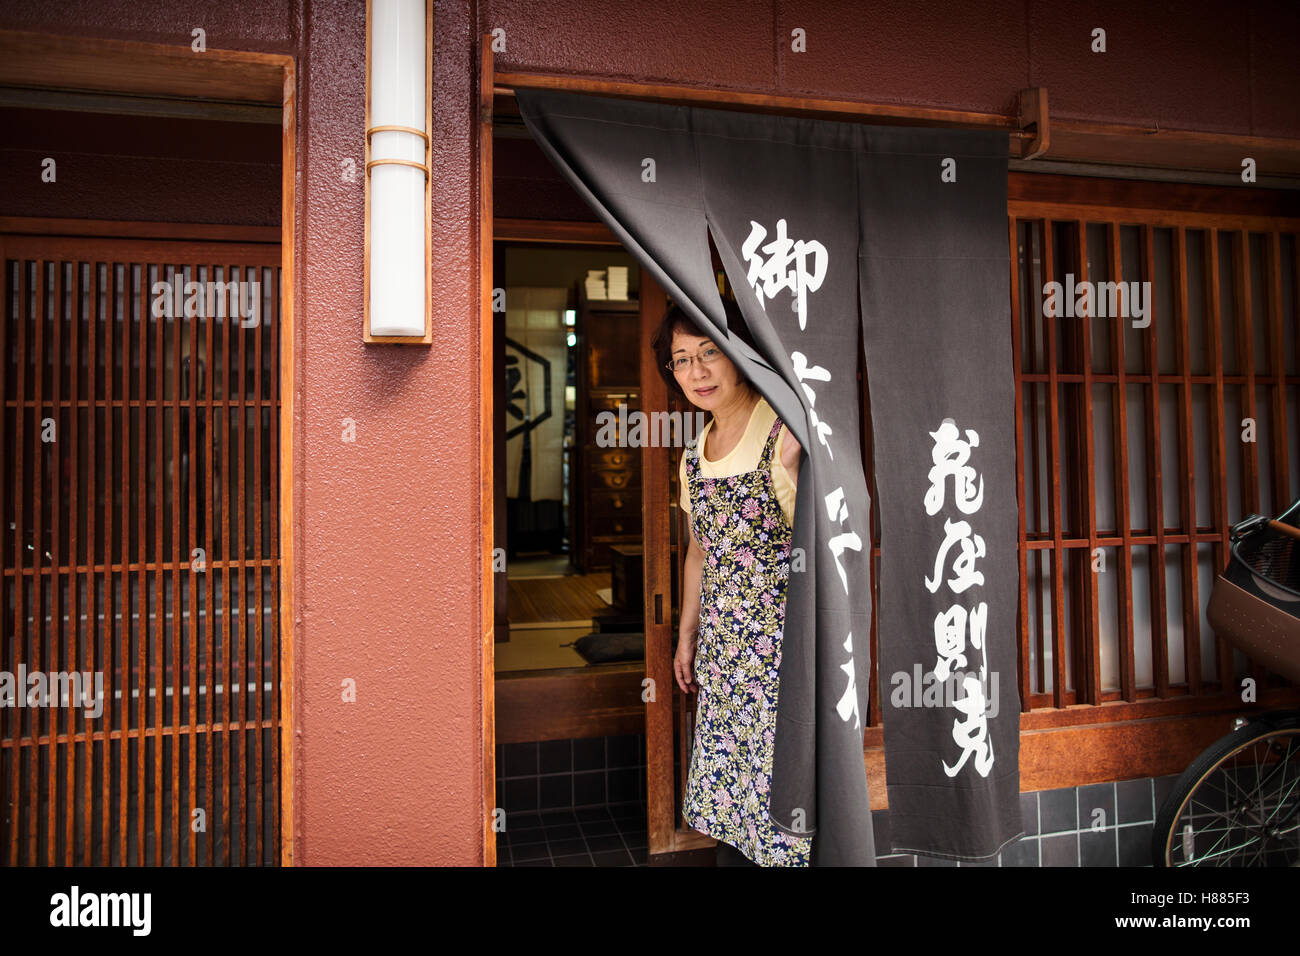 Eine kleinen Handwerker-Hersteller von Spezialisten behandelt, Süßigkeiten Wagashi genannt. Eine Frau an der Tür des Ladens. Stockfoto